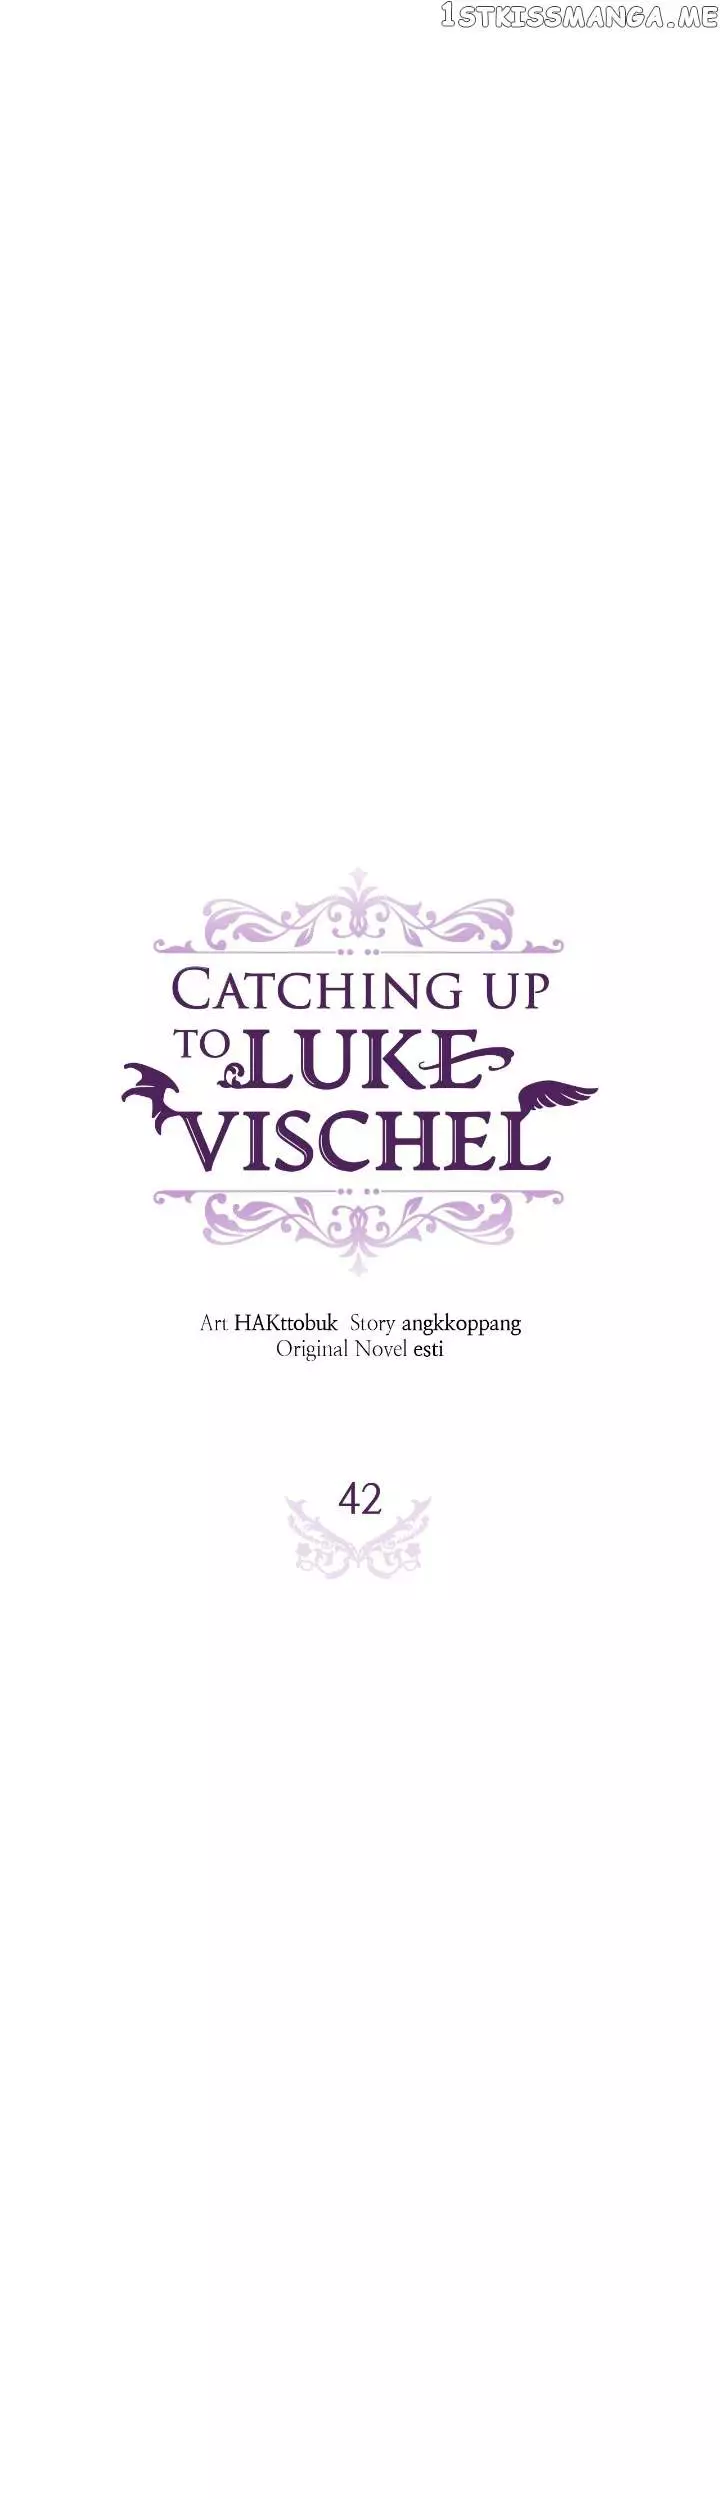 Catching Up With Luke Bischel - 42 page 13-5cdb5154